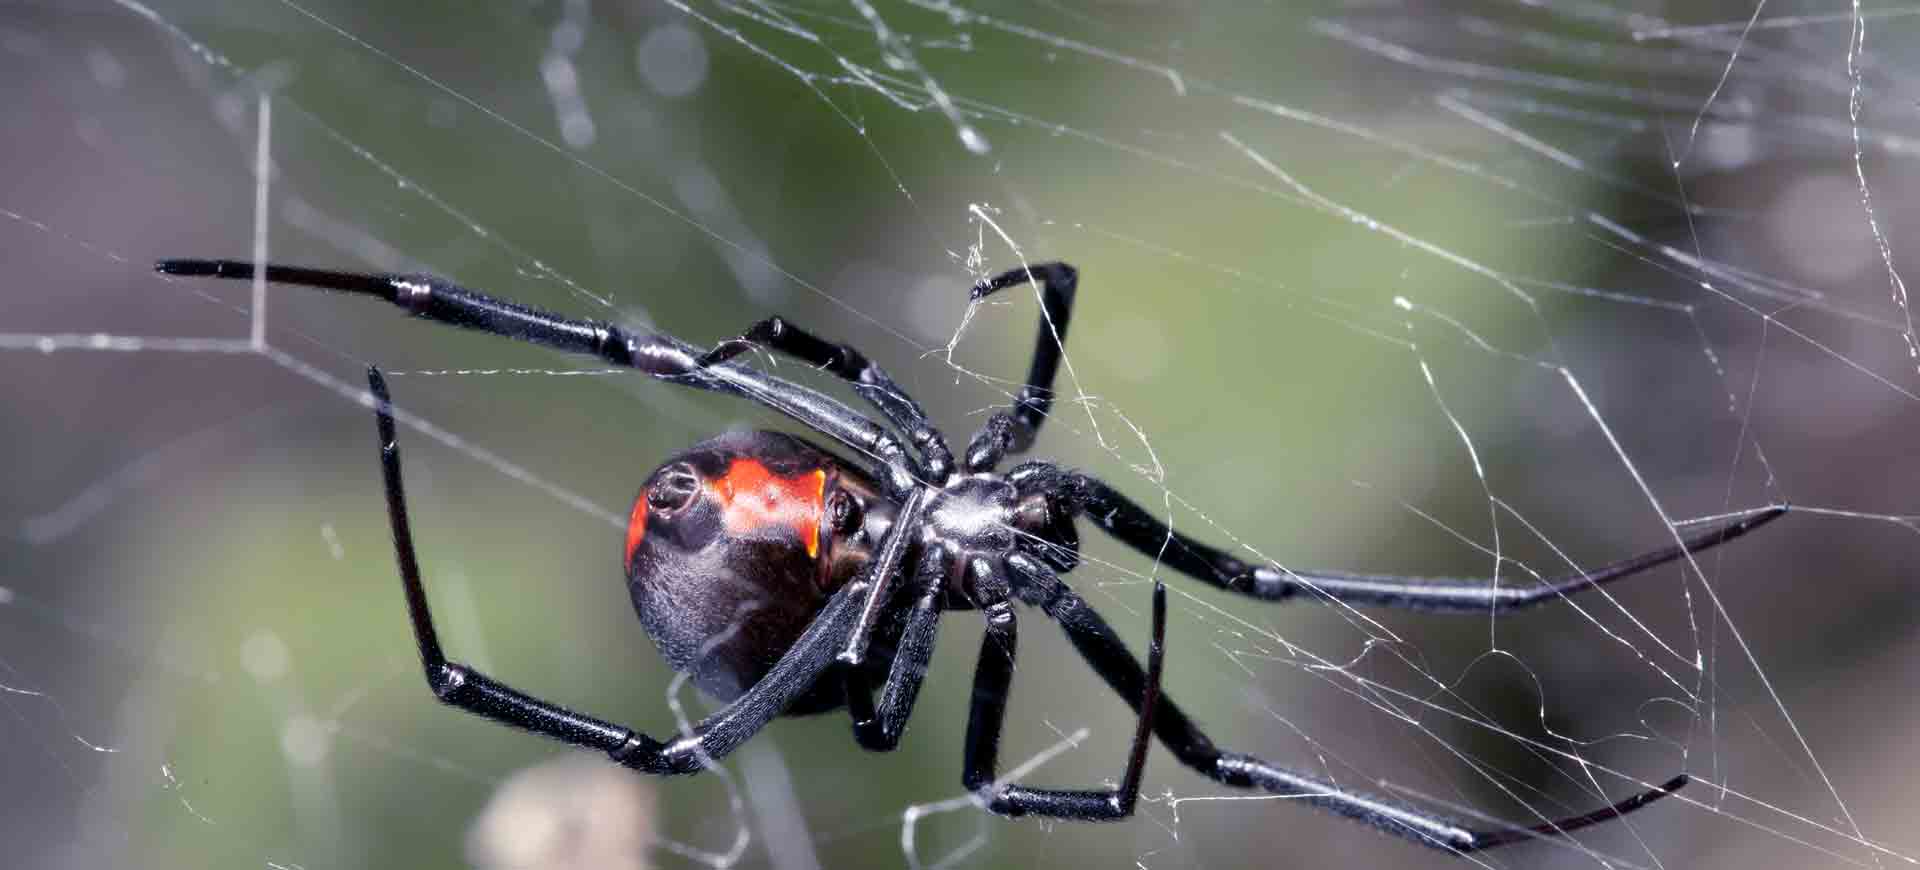 spider pest control scripps ranch